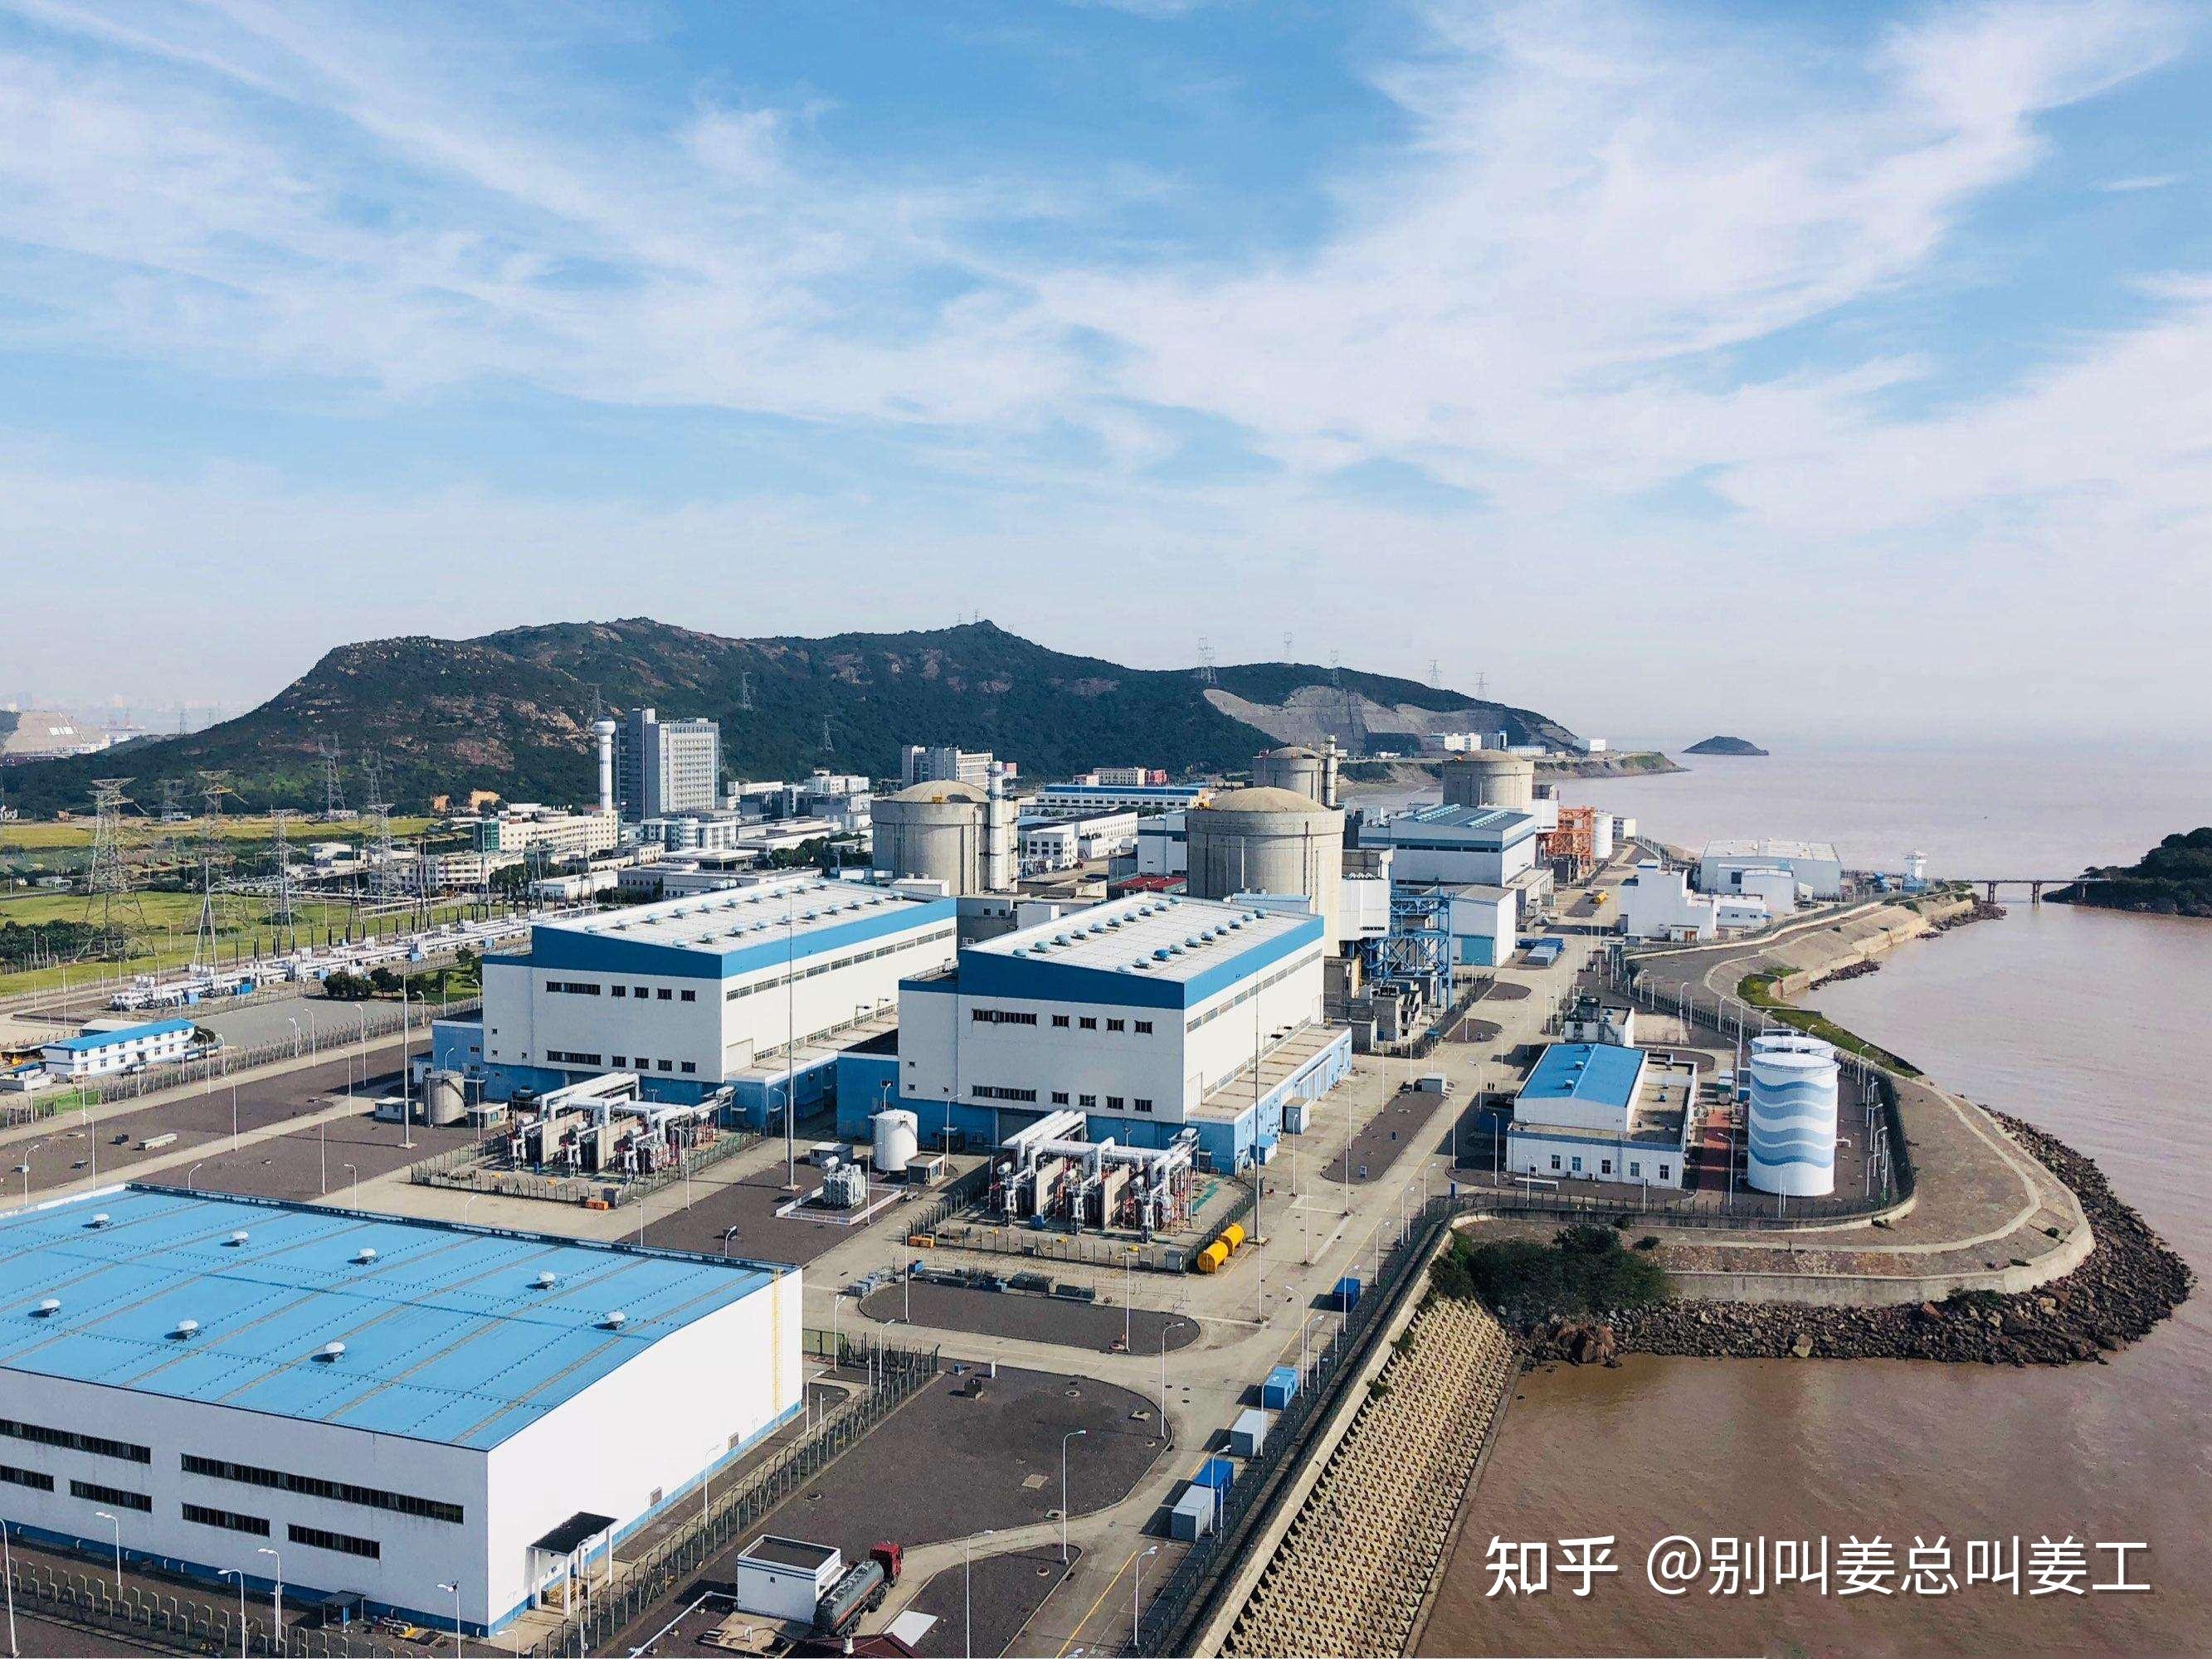 秦山核电站位置图片